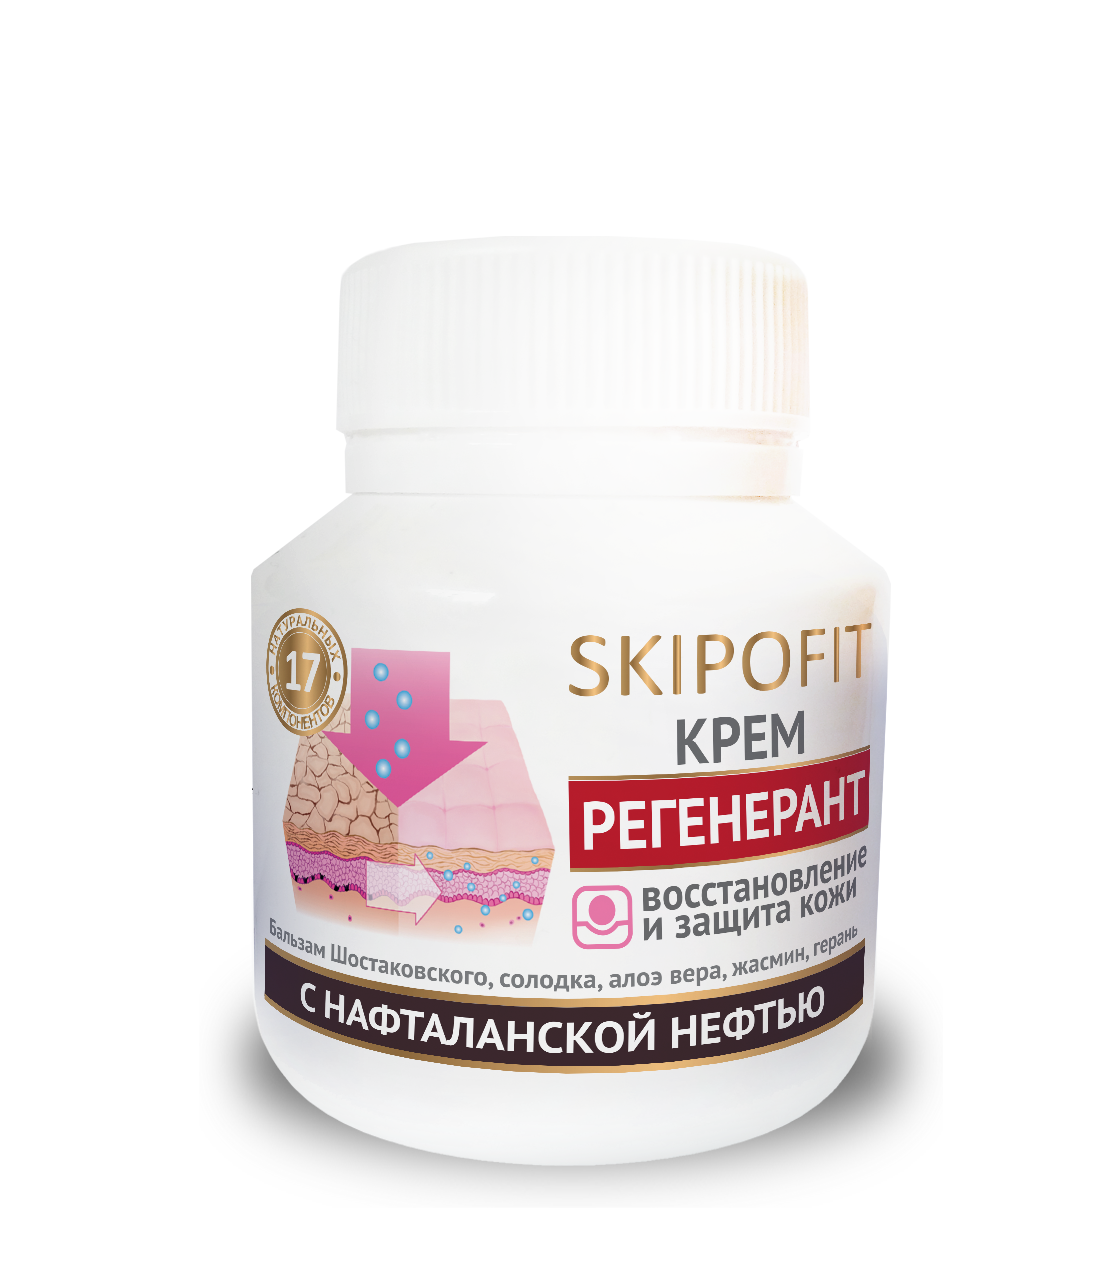  «SKIPOFIT Регенерант - крем регенерирующий с нафталанской нефтью для проблемной кожи 90 мл НИИ Натуротерапии» - Кремы, бальзамы, растирки